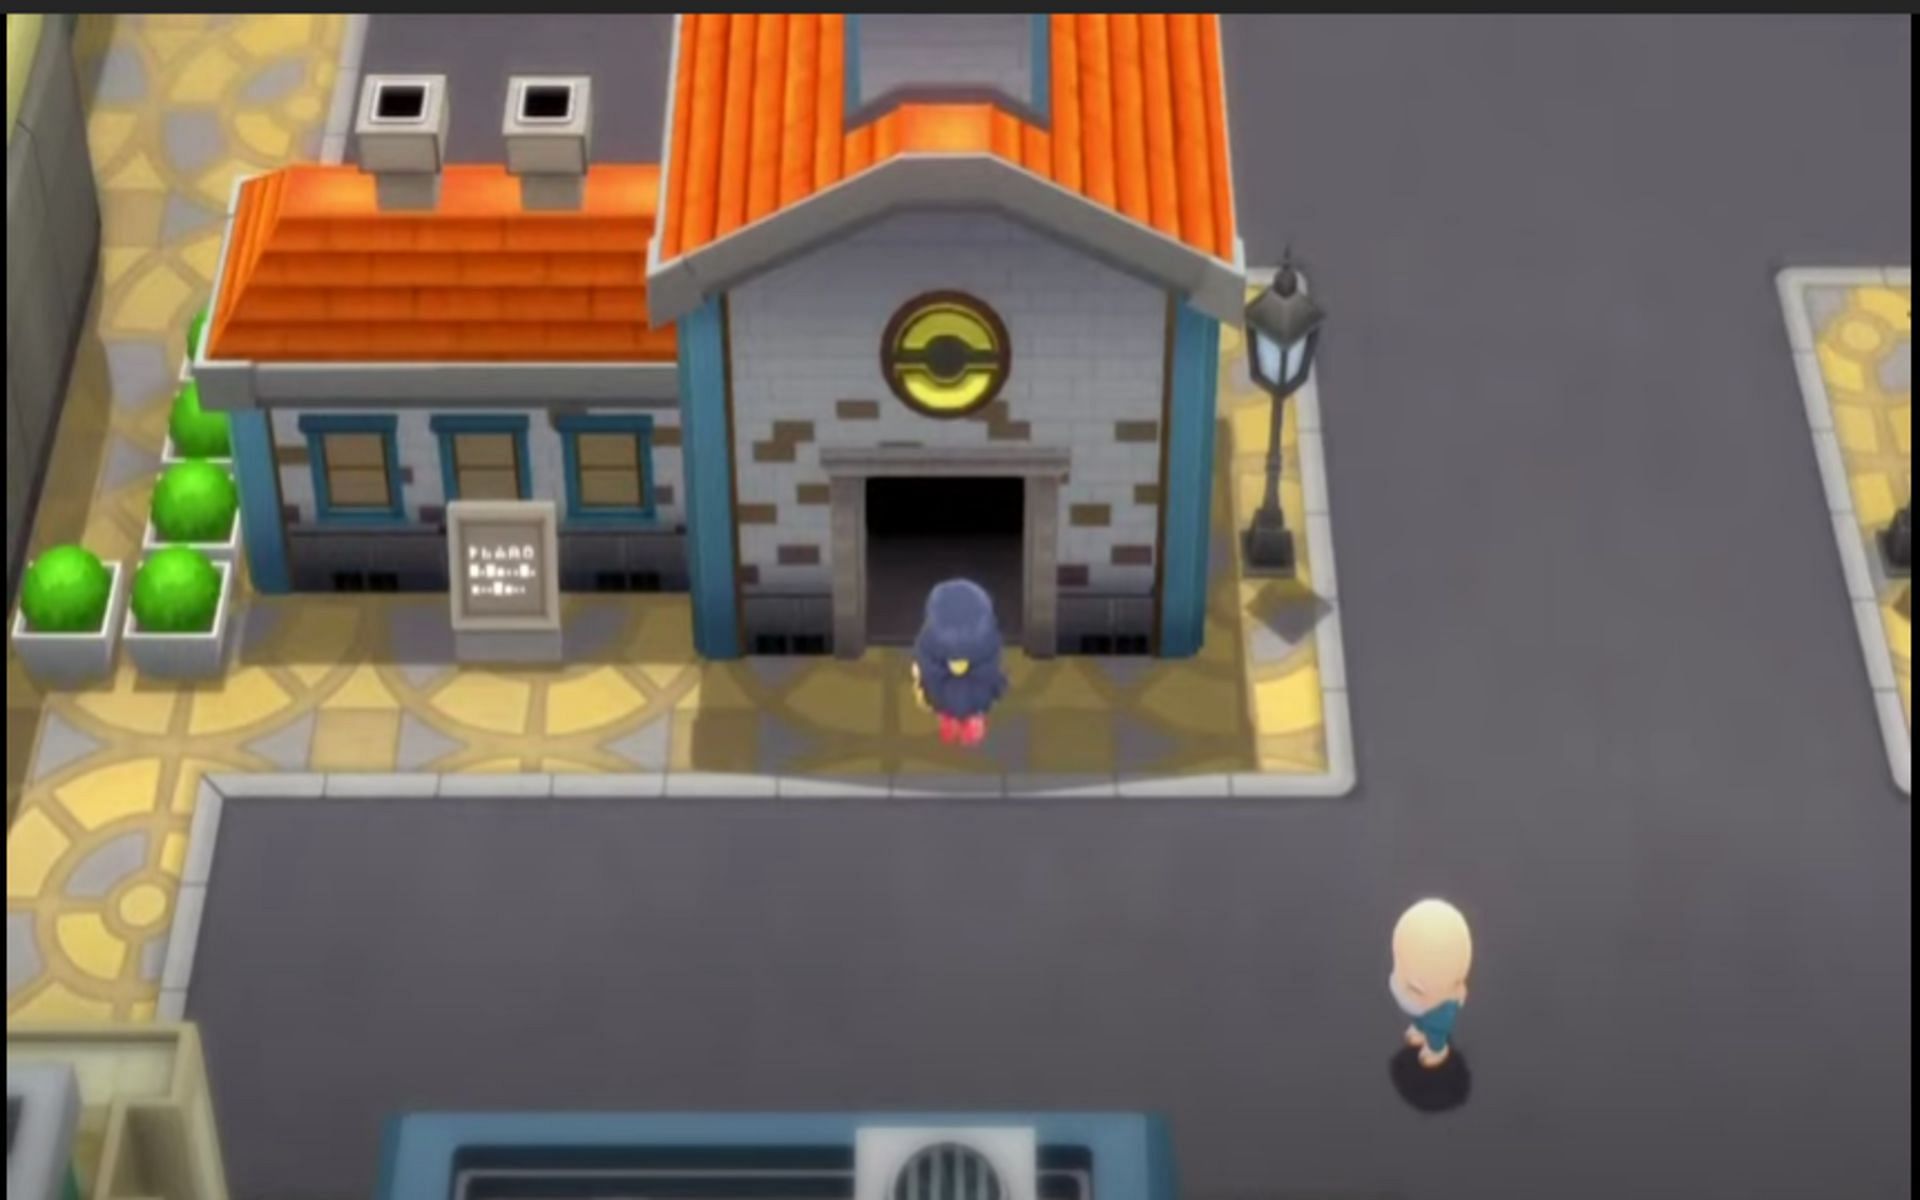 Después de la falla, no se puede acceder a los edificios (Imagen a través de The Pokemon Company)